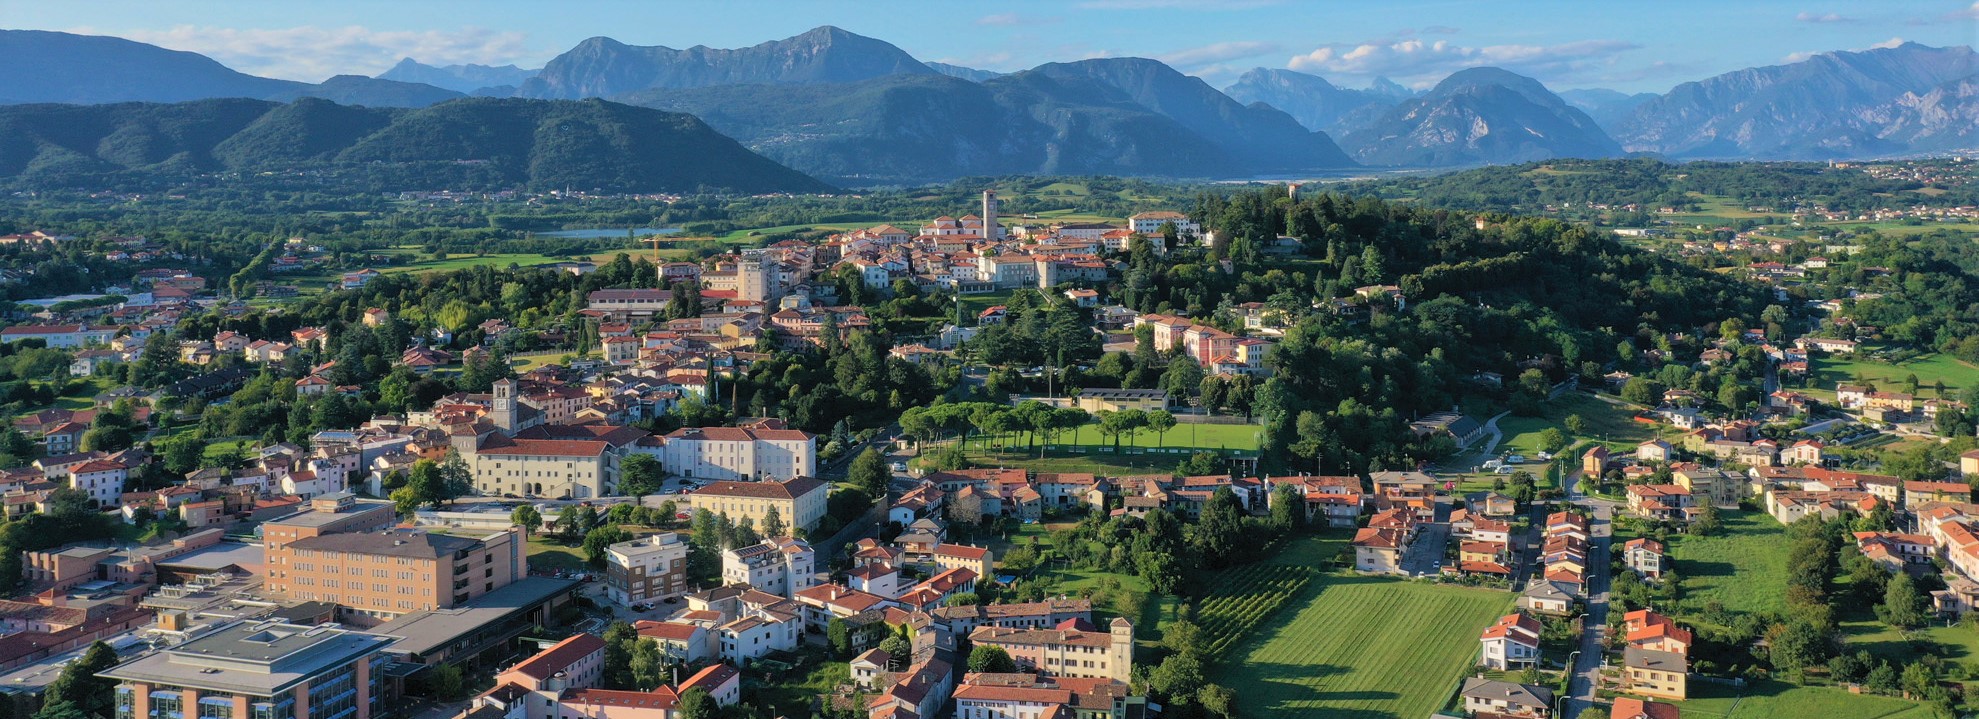 San Daniele del Friuli: terra di storia e specialità gastronomiche